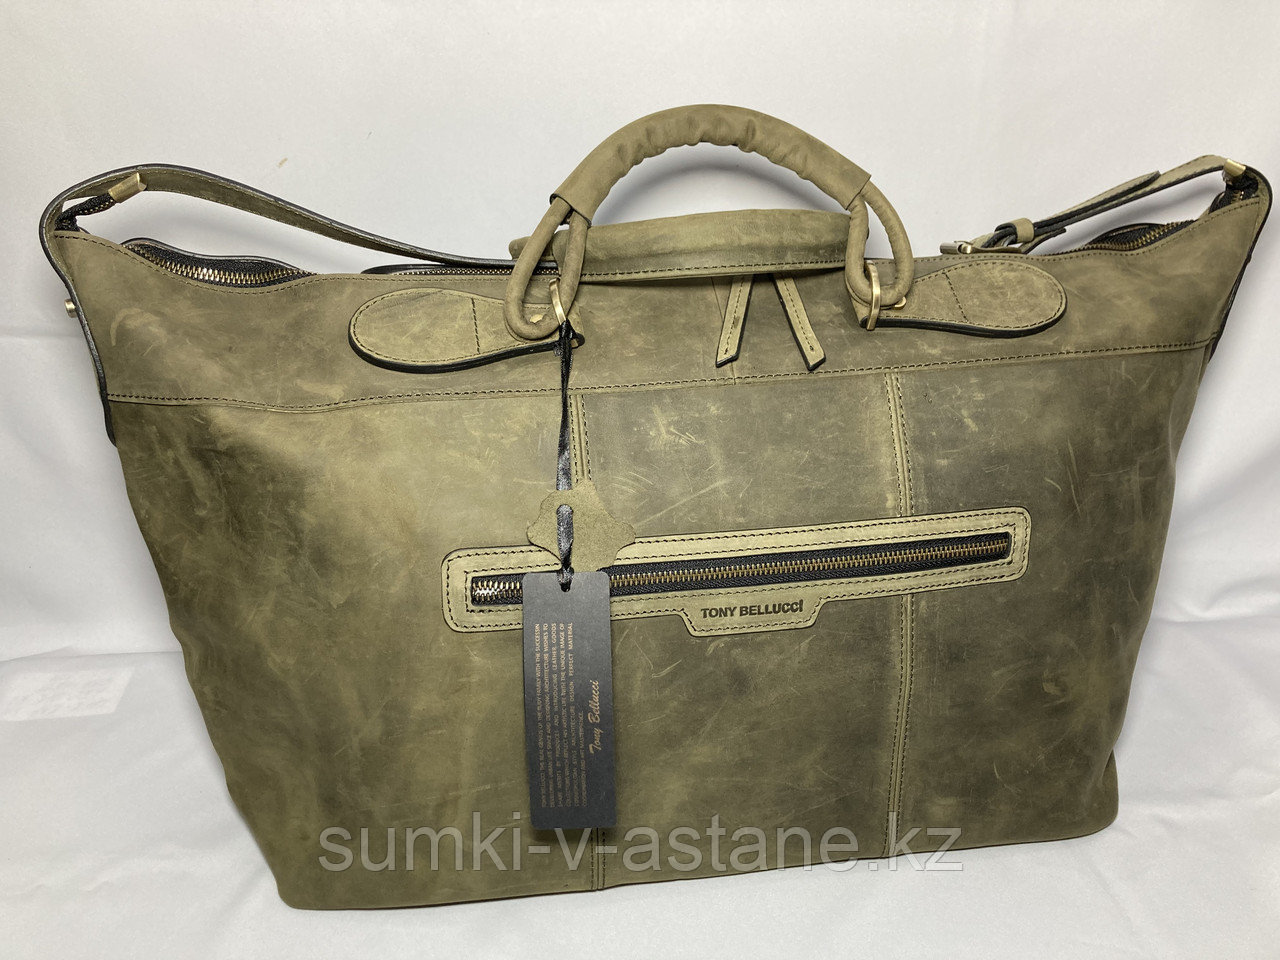 Дорожная сумка из натуральной кожи от итальянского бренда "Tony Bellucci".